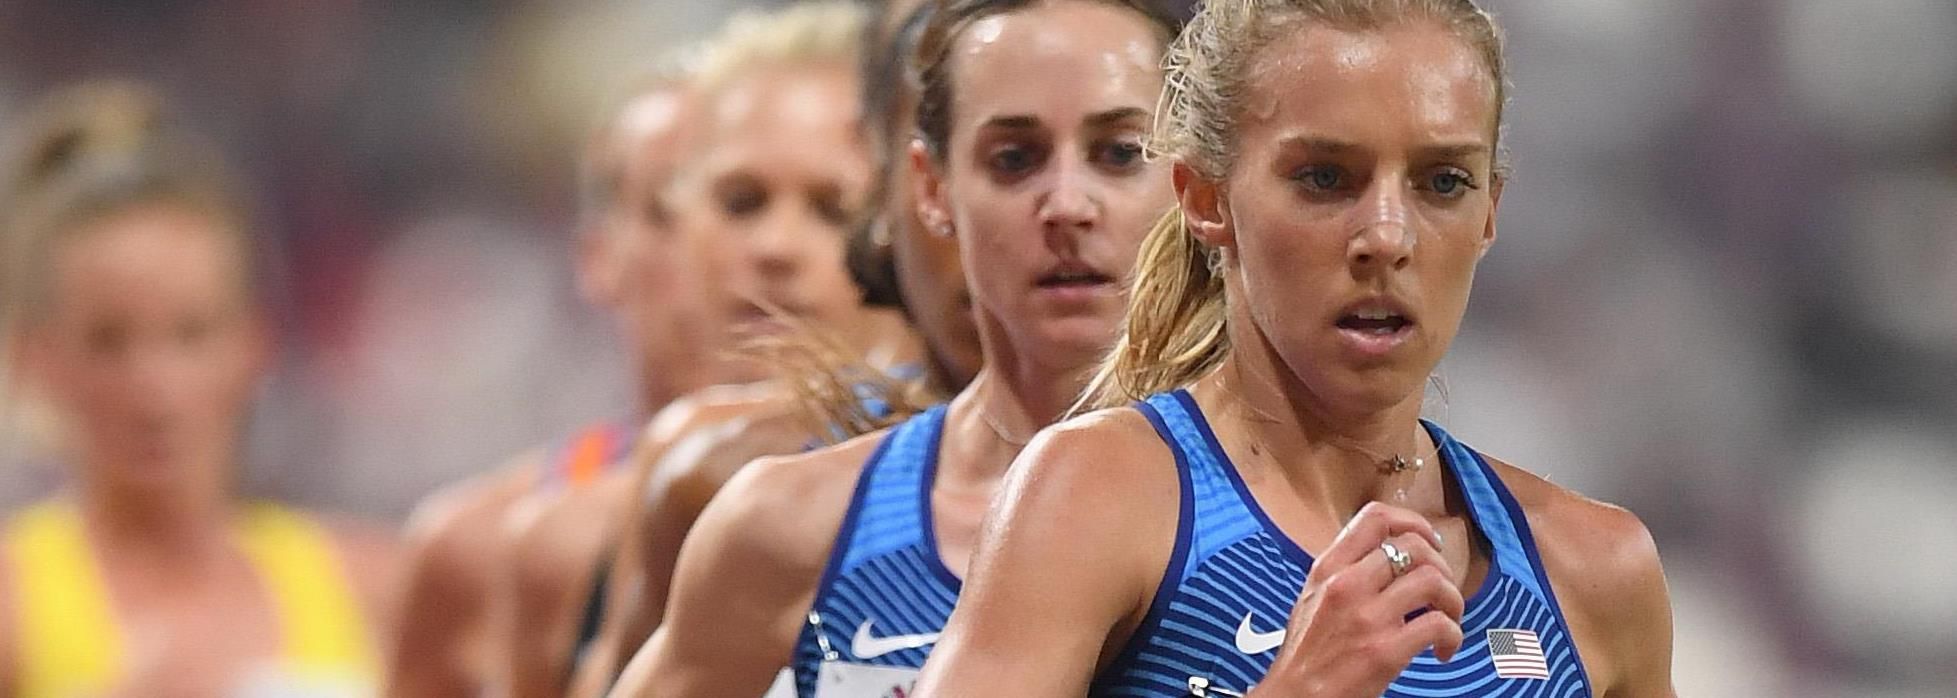 Emily SISSON | Profile | World Athletics